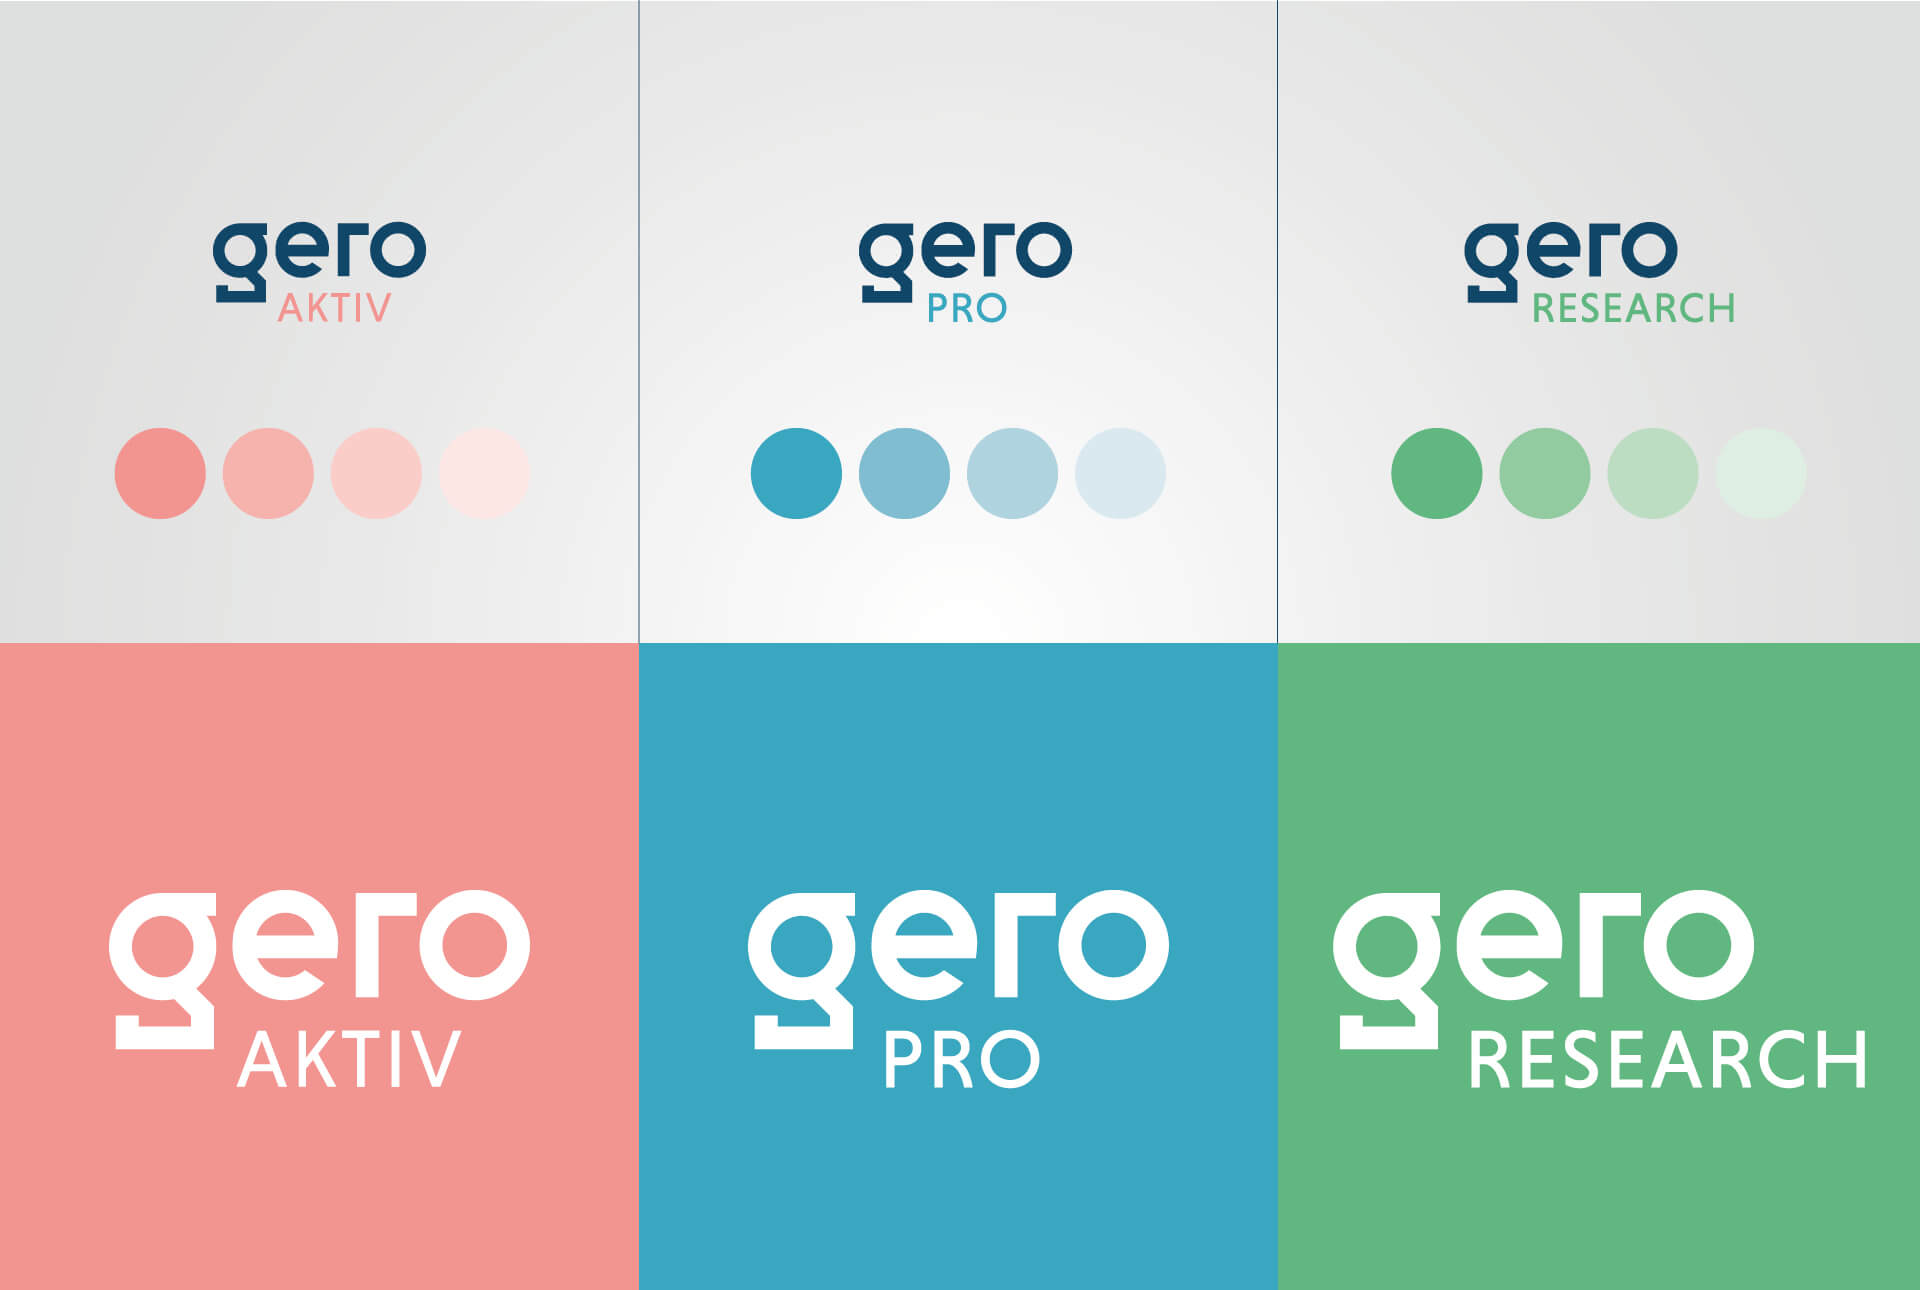 Déclinaison de l'identité visuelle pour chaque entité / services de Gero : Gero Aktiv, Gero Pro et Gero Research